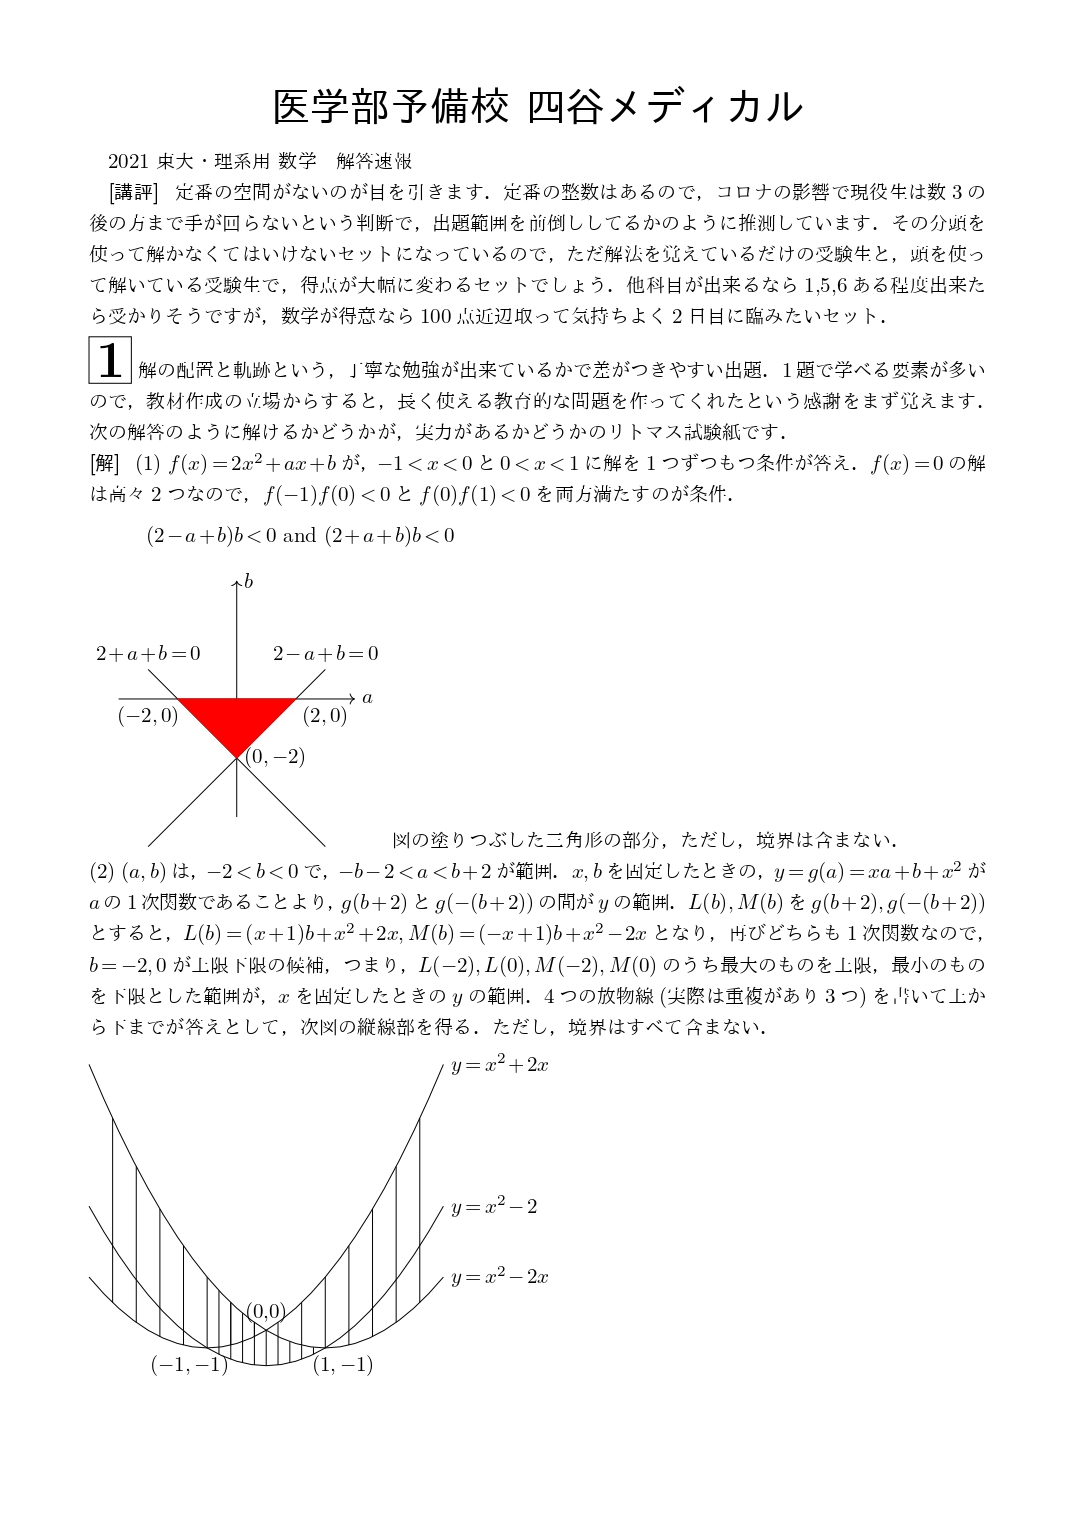 2021年2月19日 東京大学(理系)数学 解答速報